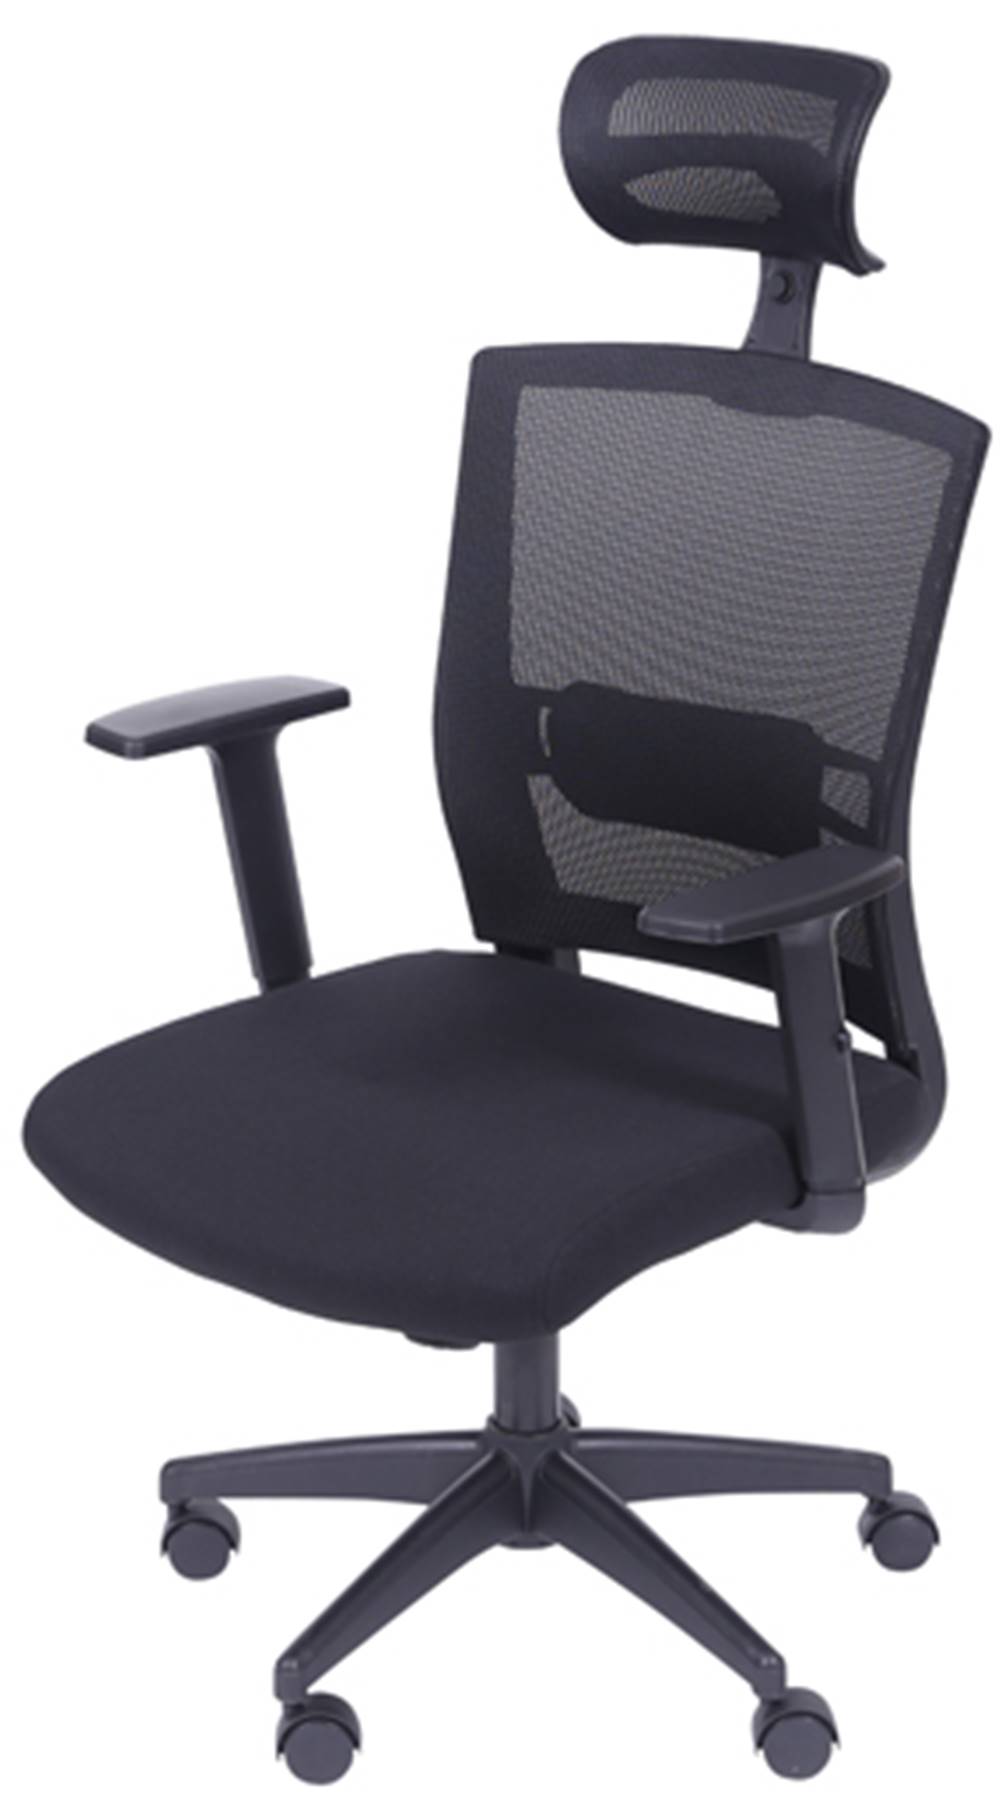 Cadeira Office Regulavel Tela com Tecido Mesh Preta Base Nylon - 39218